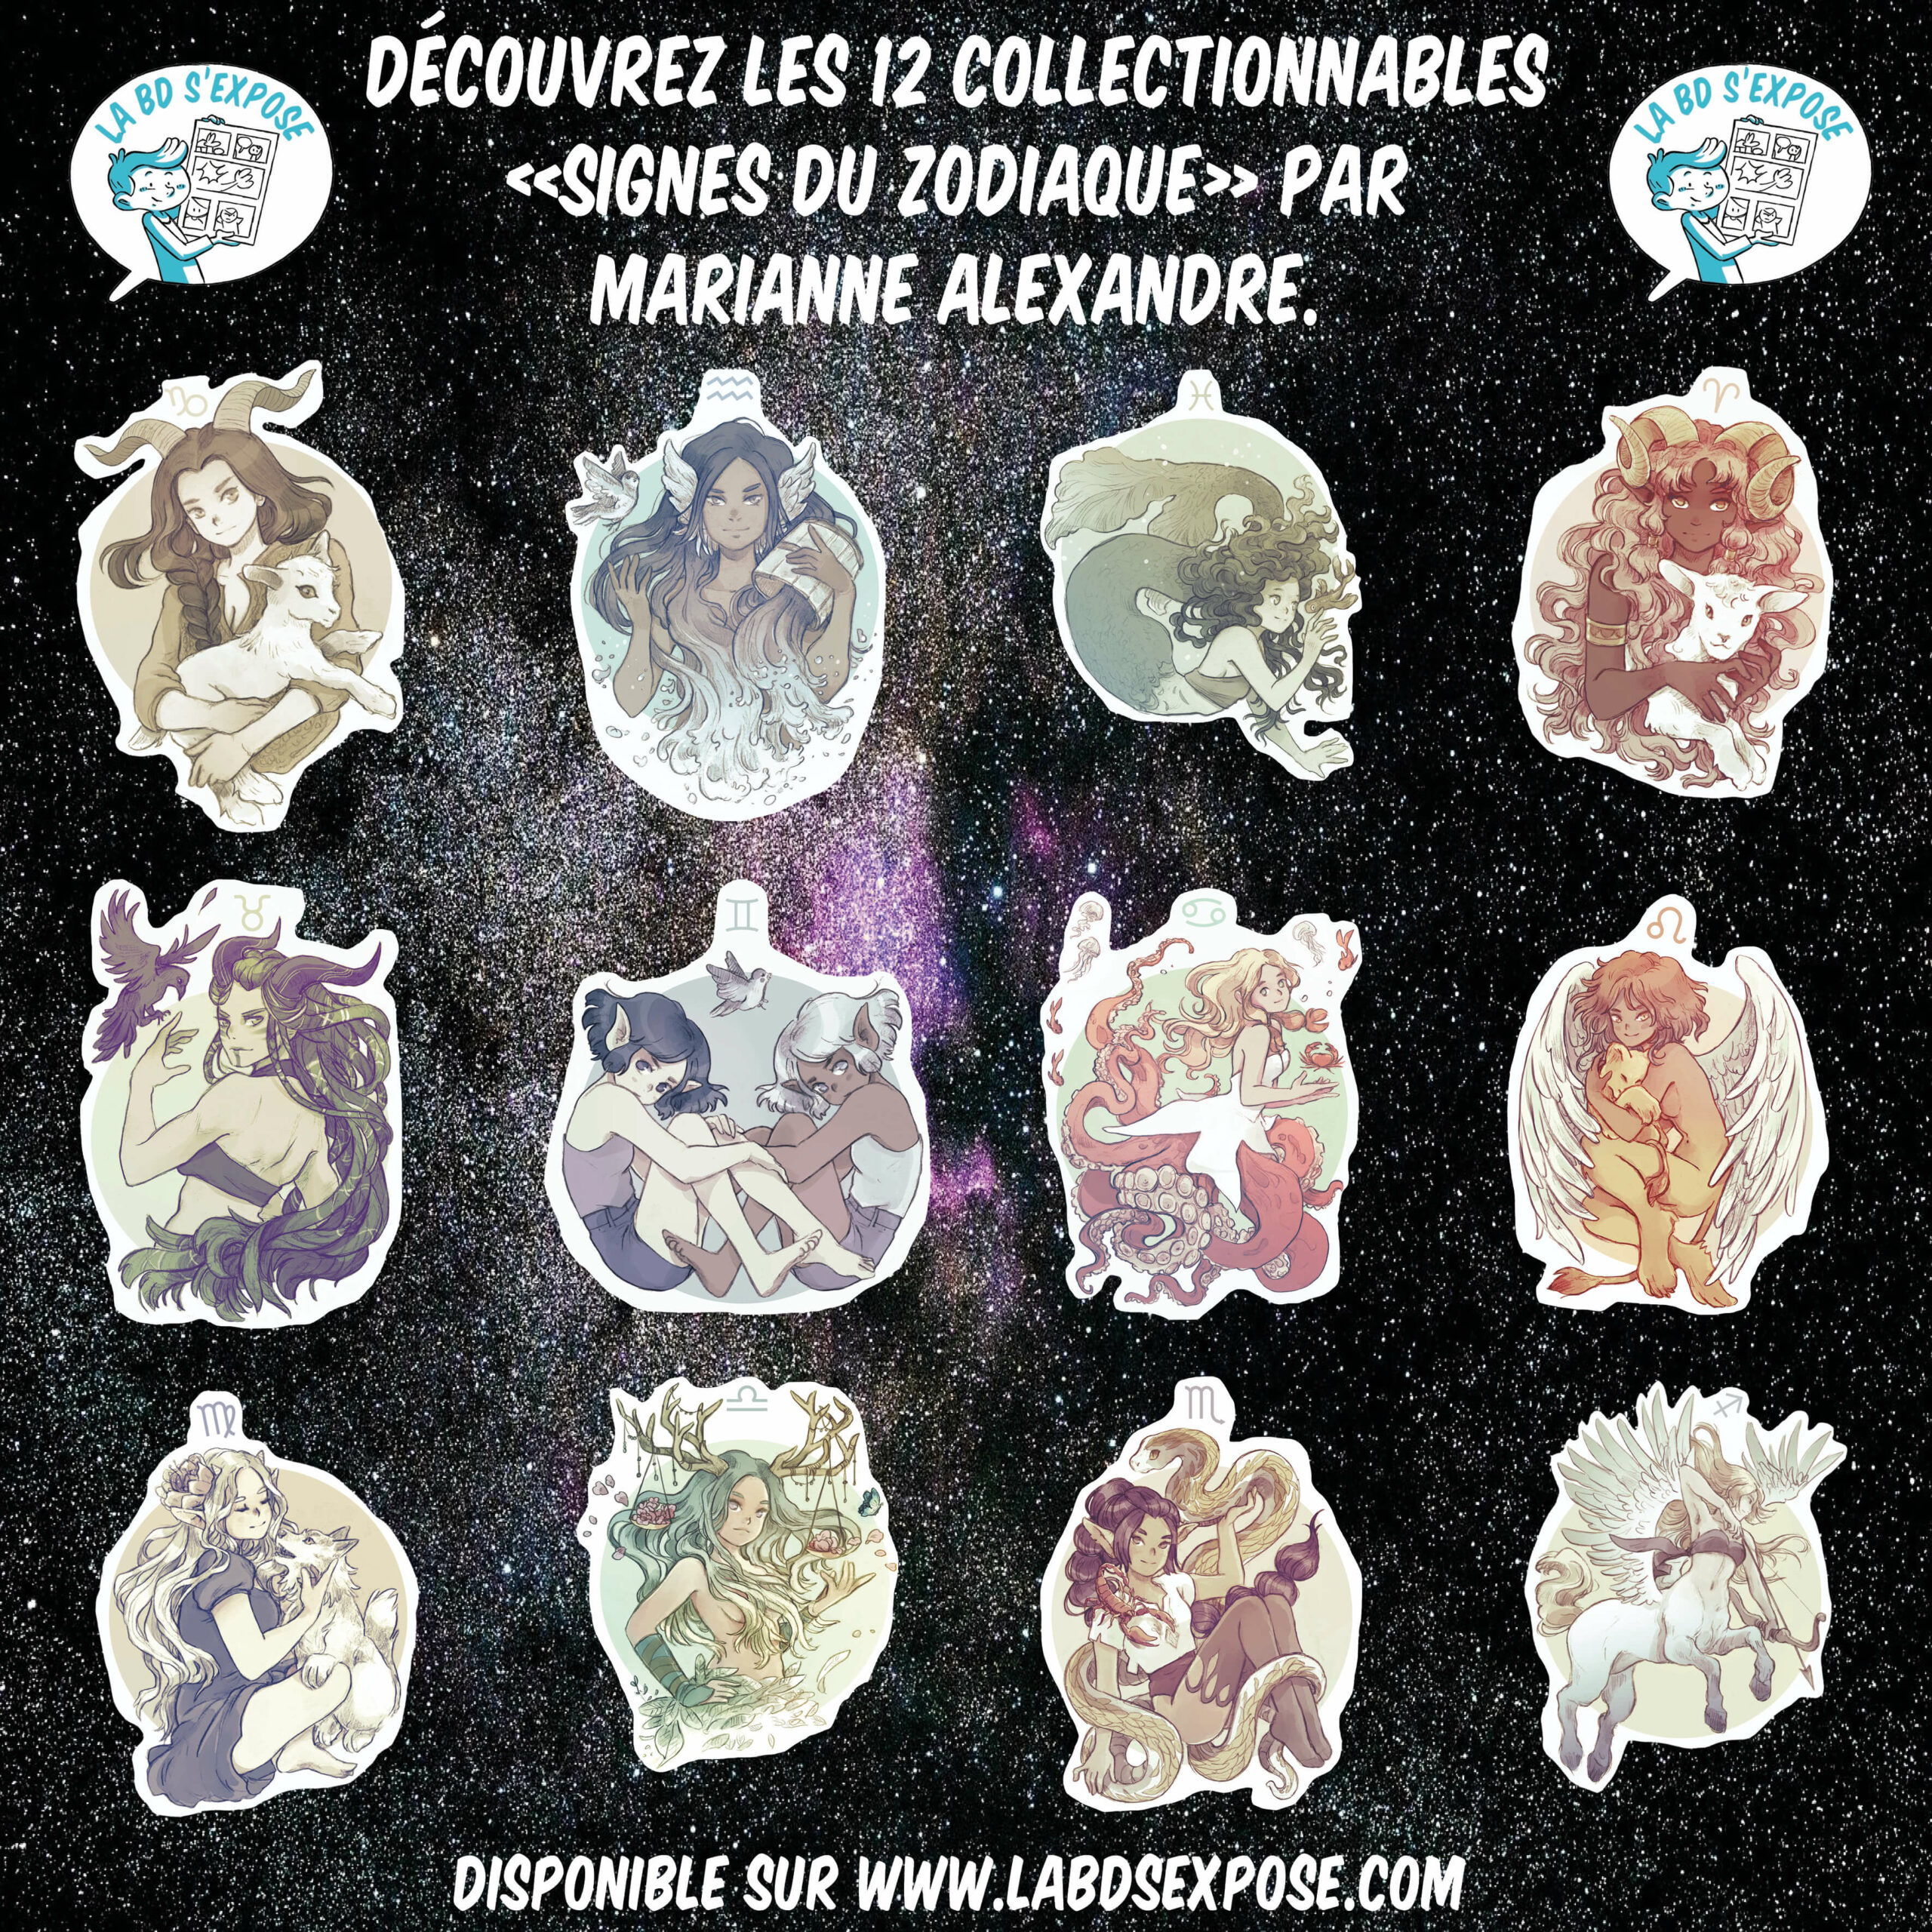 Réseaux présentation collectionnables Zodiaque Marianne Alexandre La BD s'expose